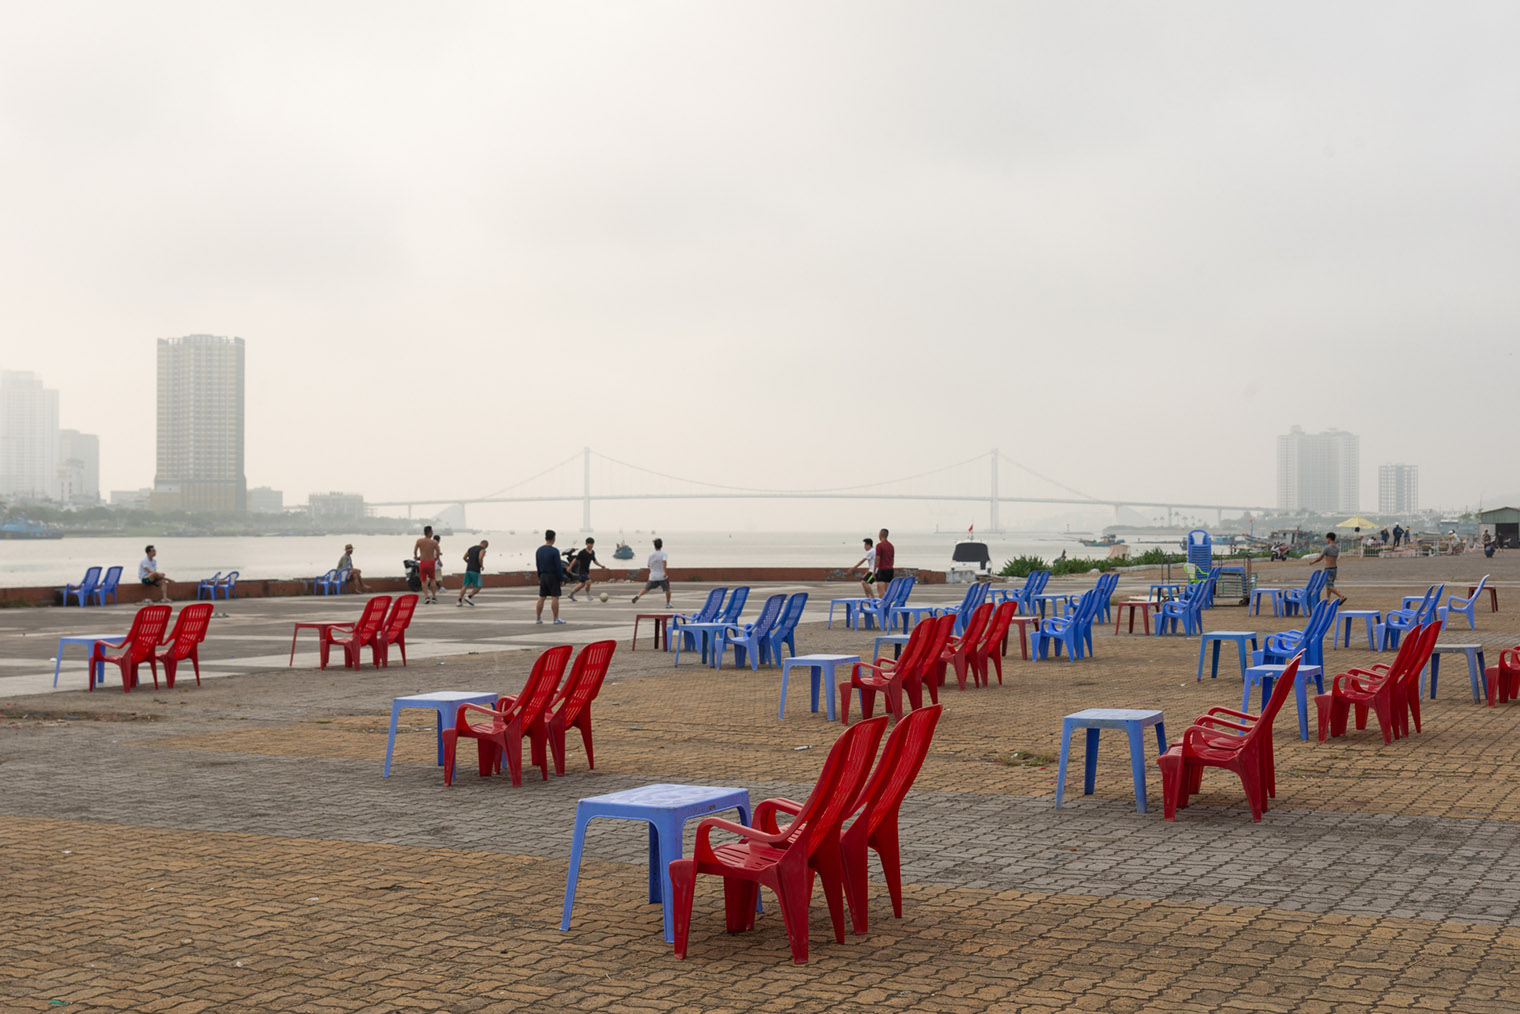 Кафе расставляют на улице незамысловатые пластиковые столы и стулья